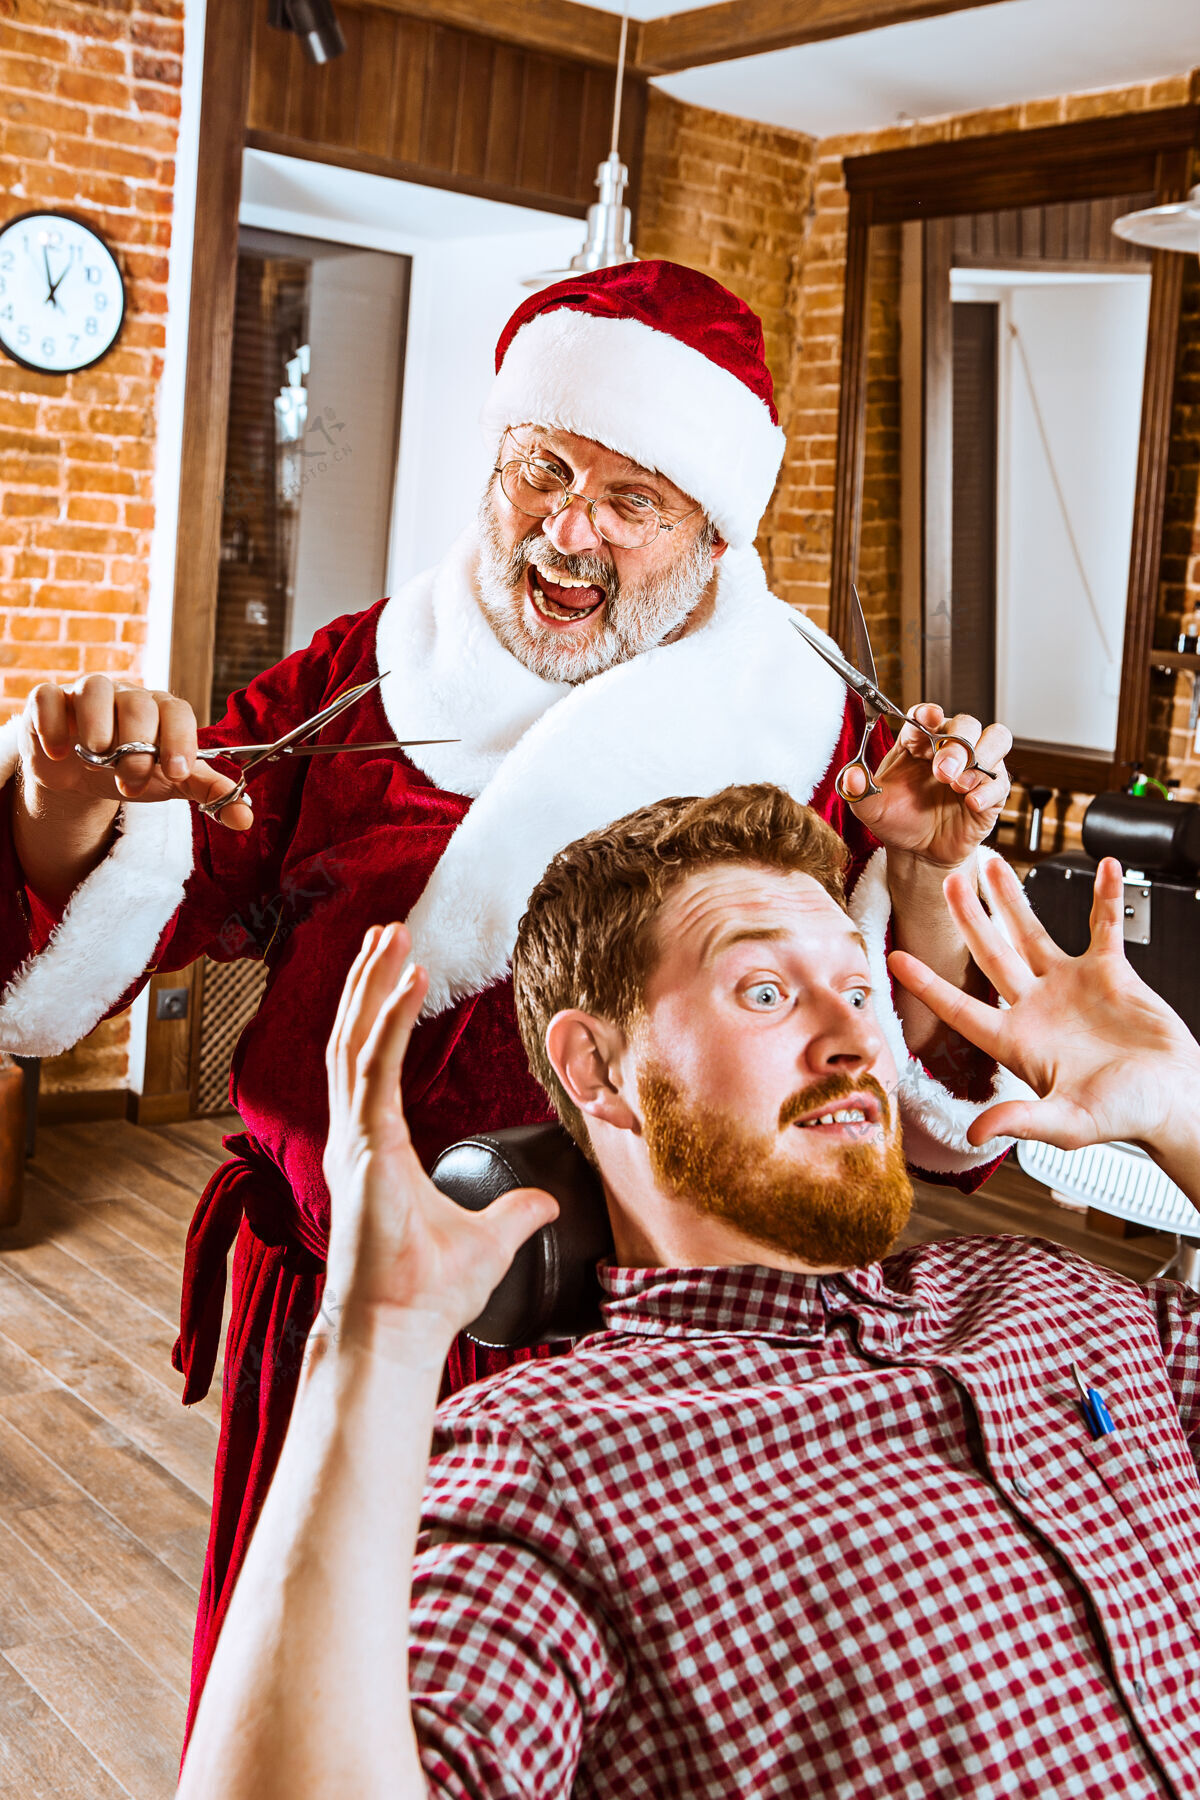 胡子圣诞前 那个穿圣诞老人服装的老人拿着剪刀在理发店当私人师傅服装衣服发型